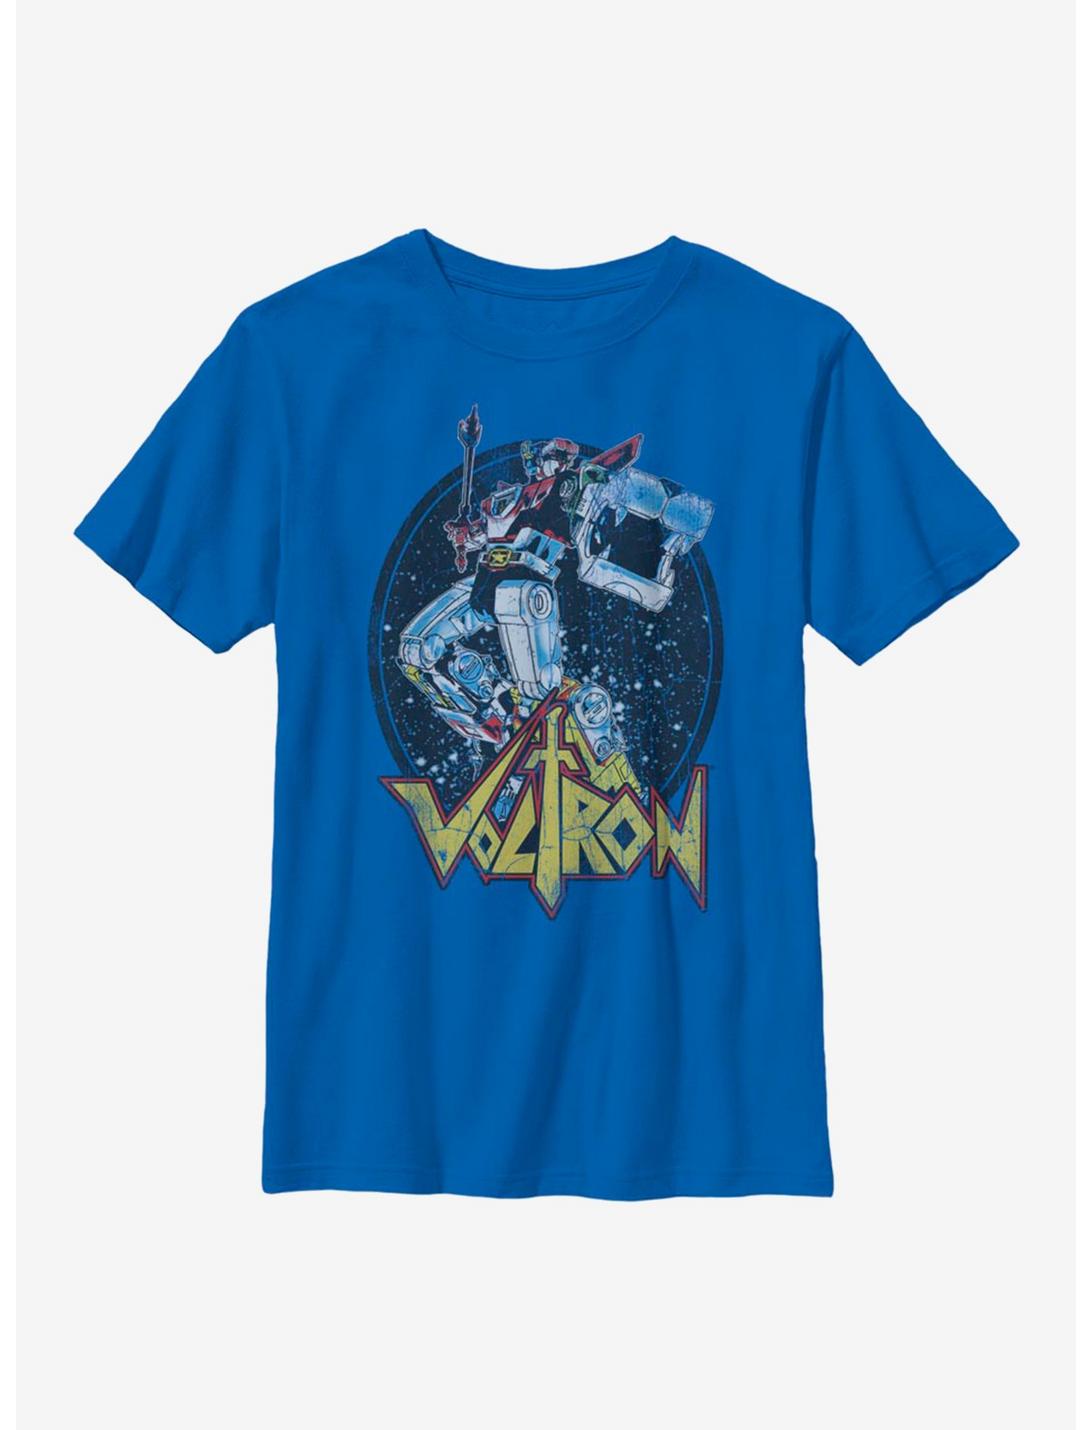 Voltron: Legendary Defender Biggest Defender Youth T-Shirt, ROYAL, hi-res